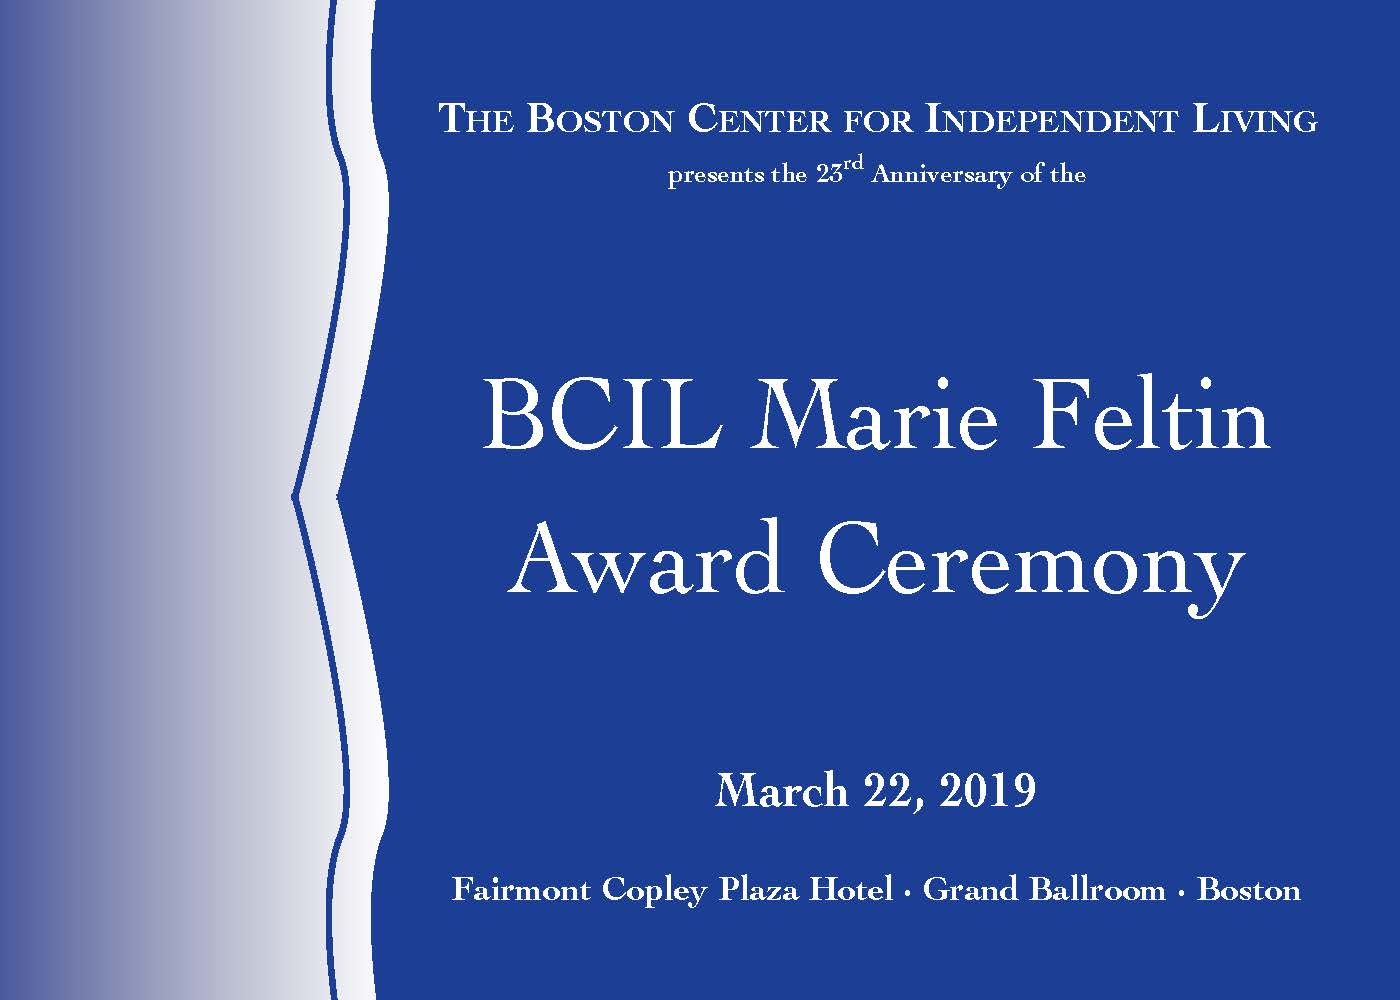 BCIL Marie Feltin Award Ceremony